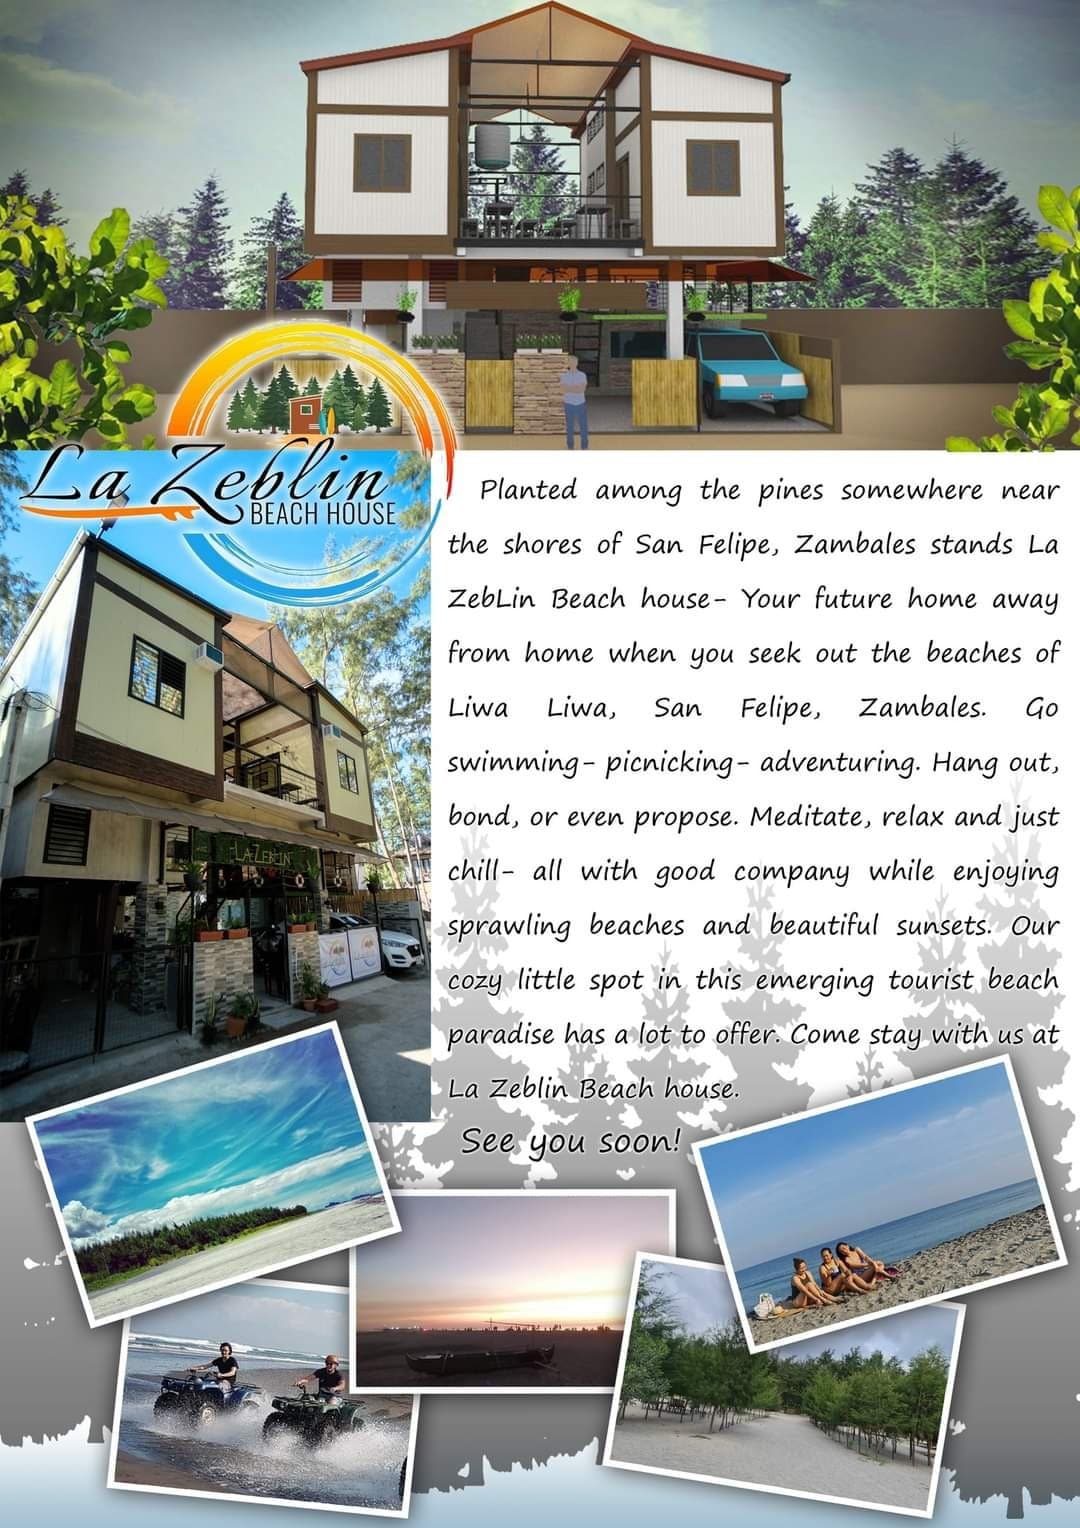 La ZebLin Beach House 
Liwliwa
(30 pax recom cap.)